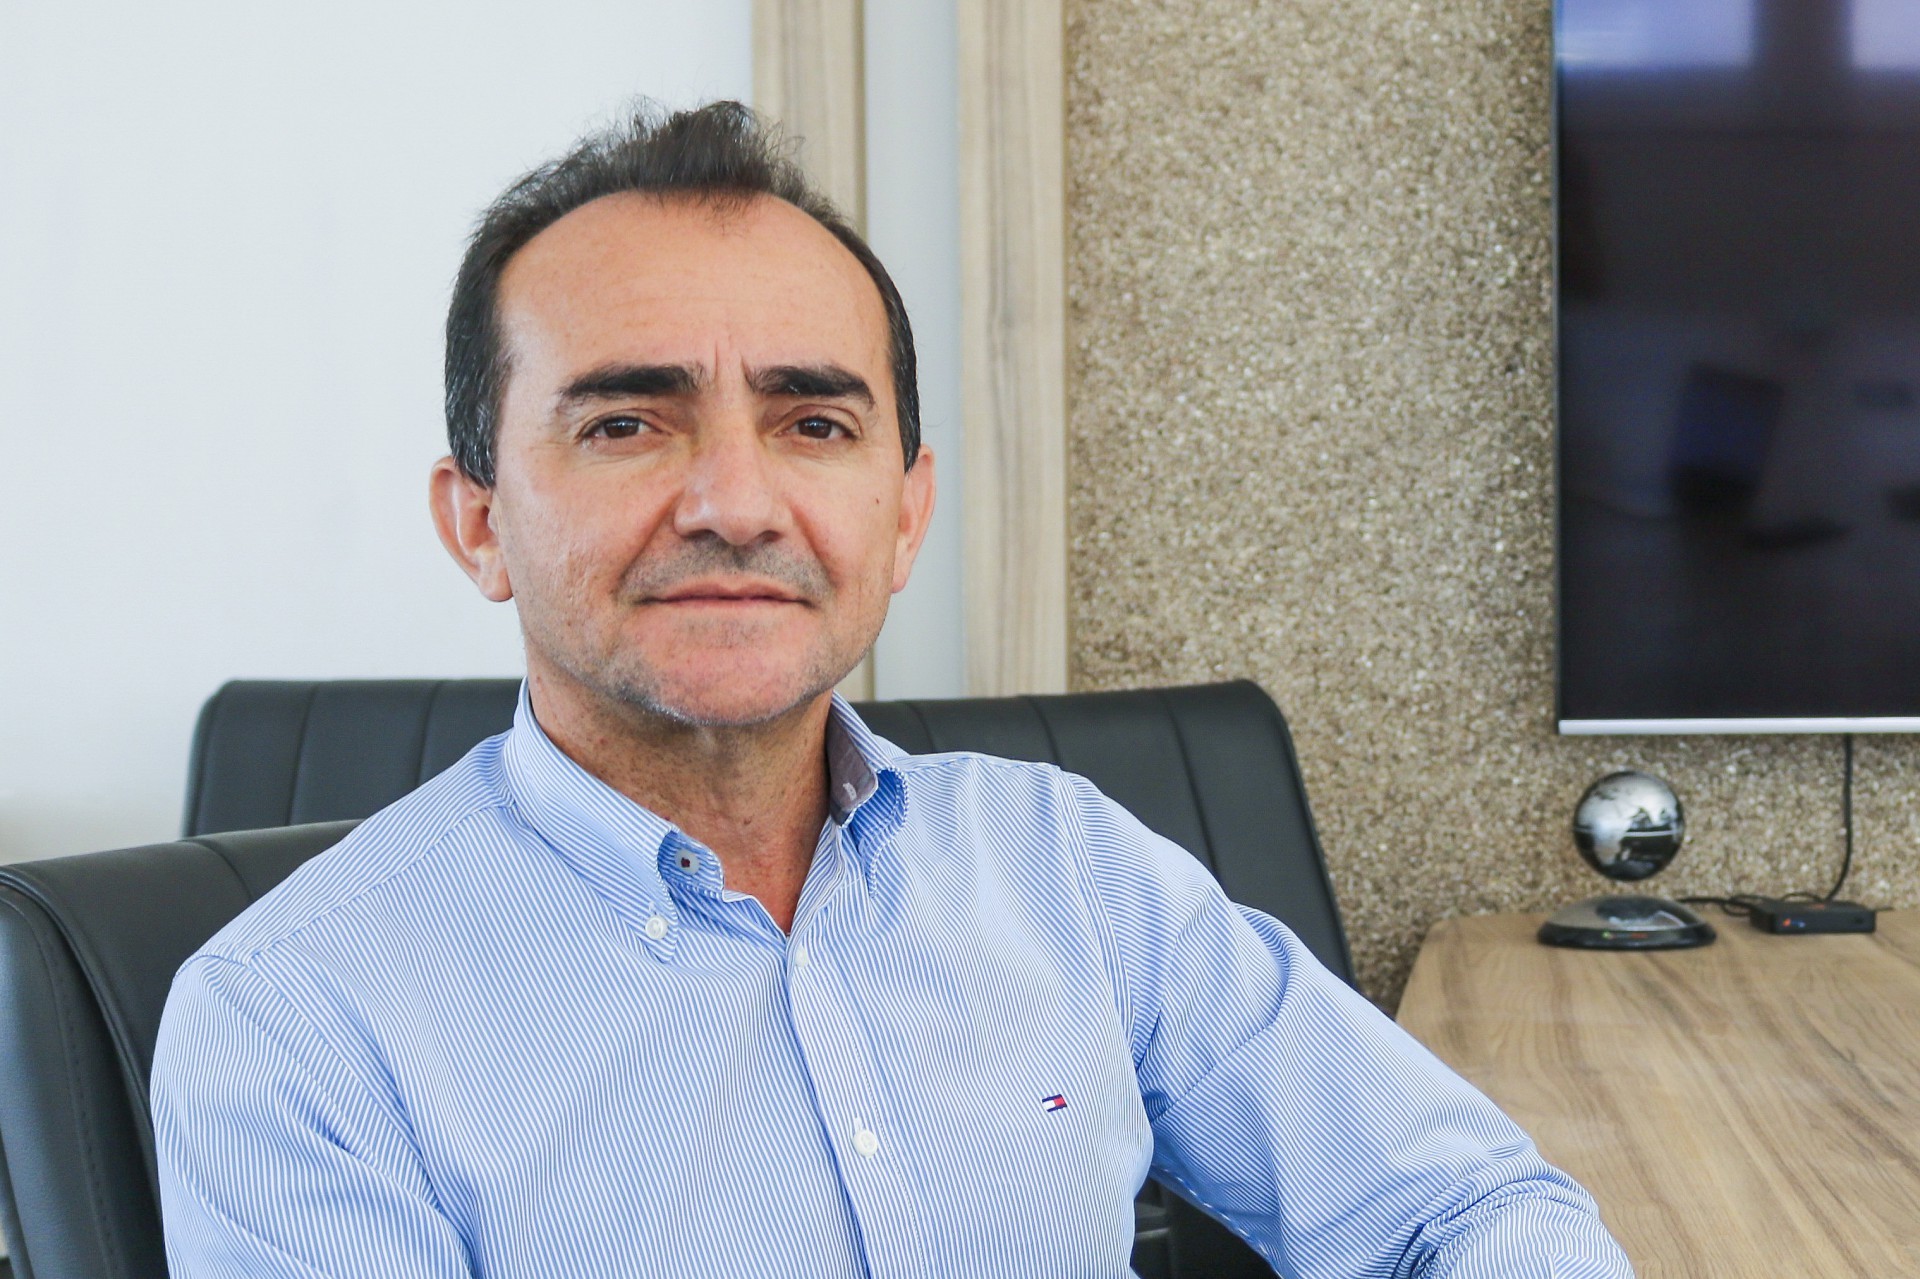  José Roberto Nogueira, CEO da Brisanet, foi eleito o Equilibrista de 2023 pelo Ibef-CE (Foto: Deisa Garcêz , em 13/10/2021)